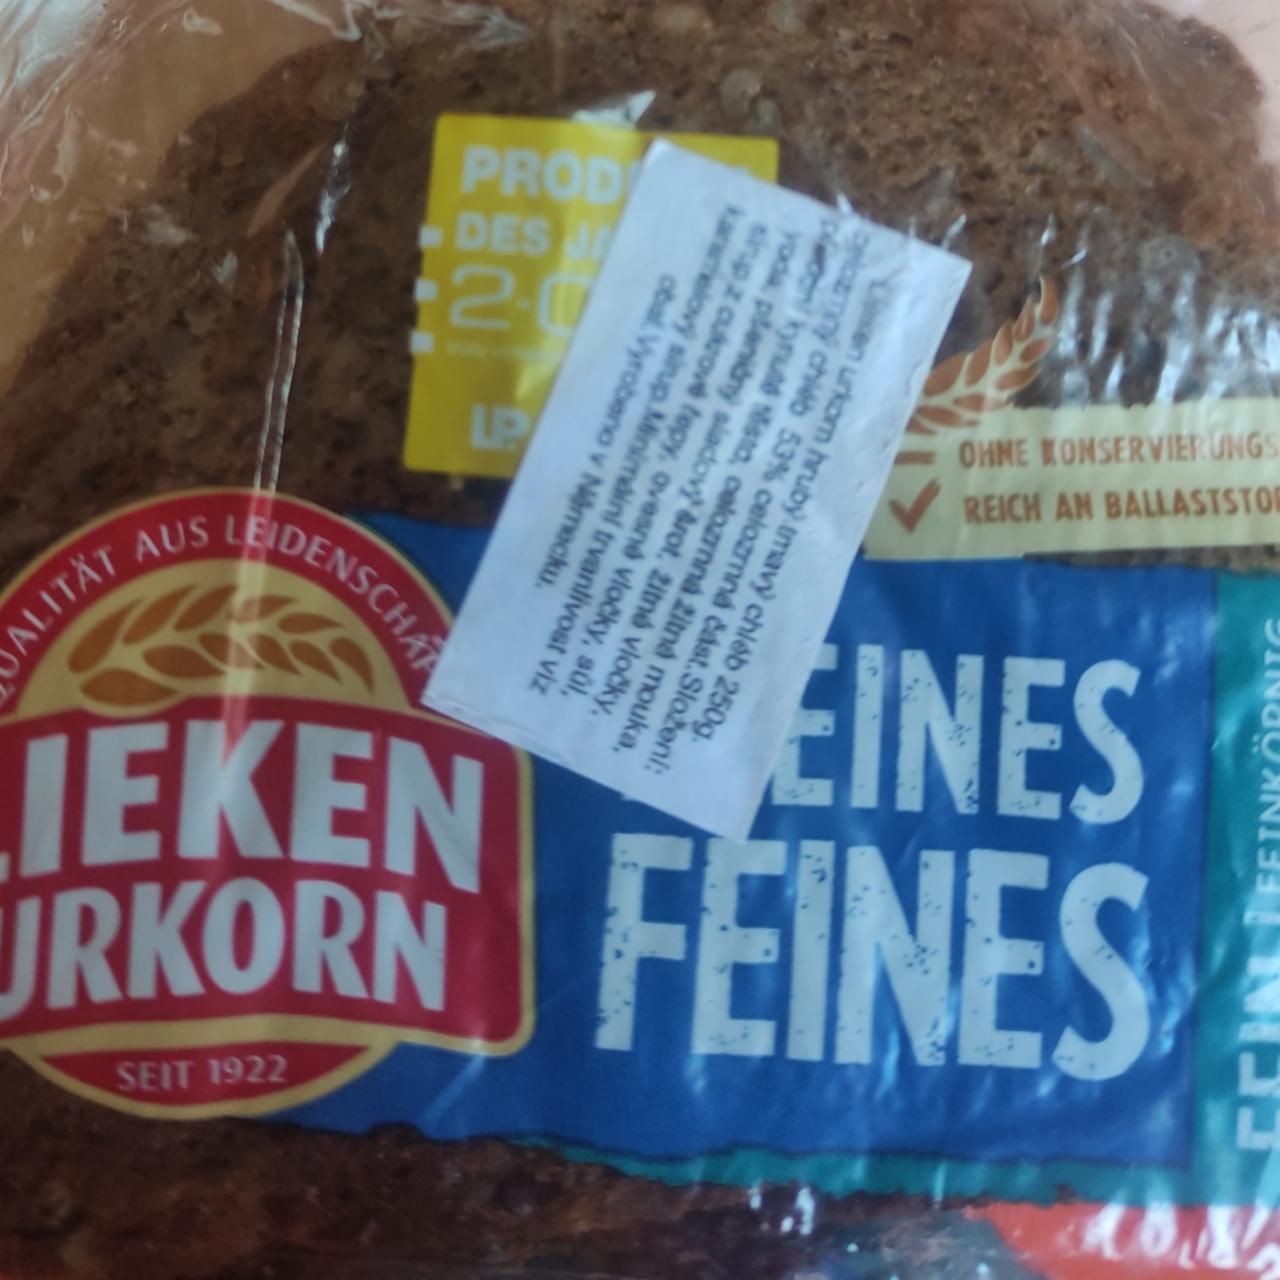 Фото - хлеб ржаной Lieken Urkorn